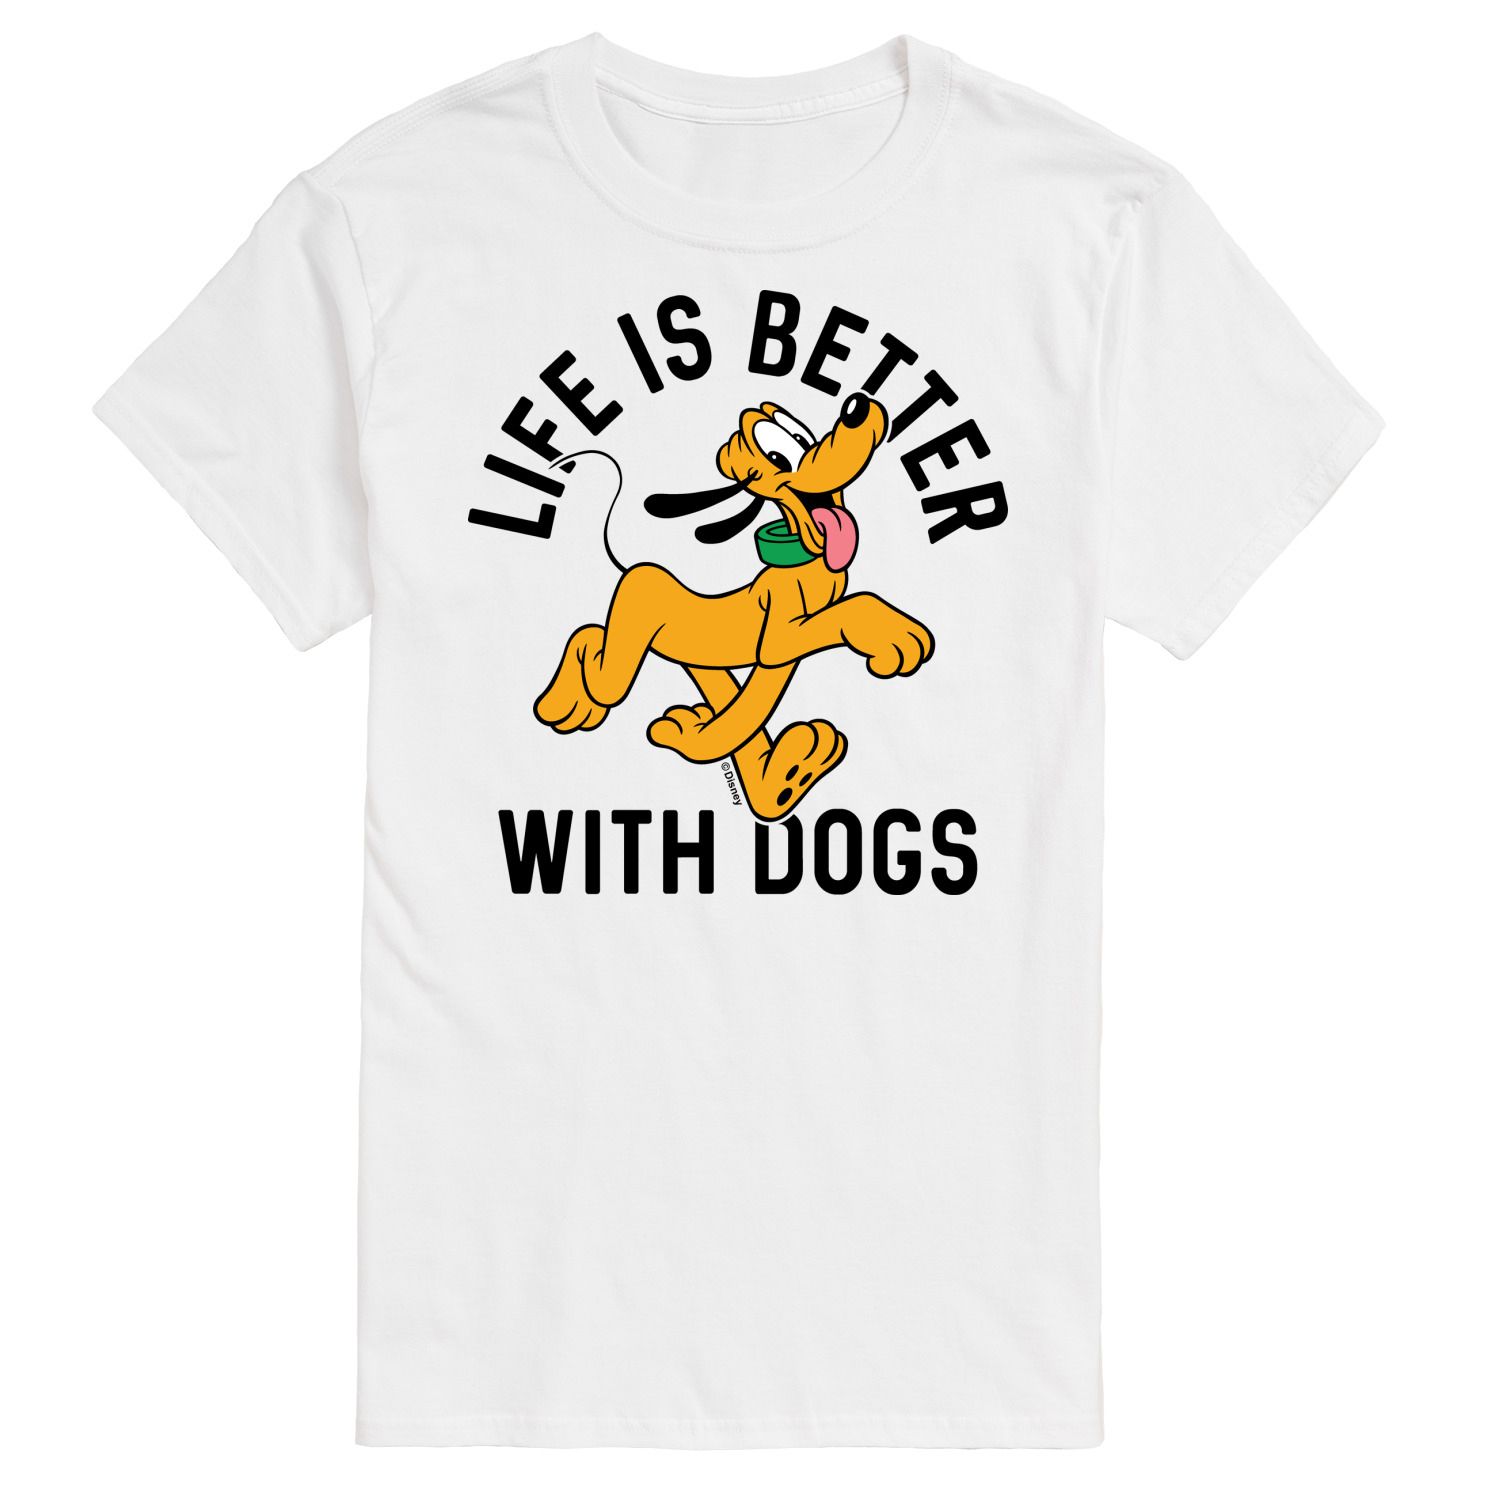 Мужская футболка Disney с рисунком собак «Жизнь лучше с собаками» Licensed Character printio футболка для собак с собакой жизнь лучше